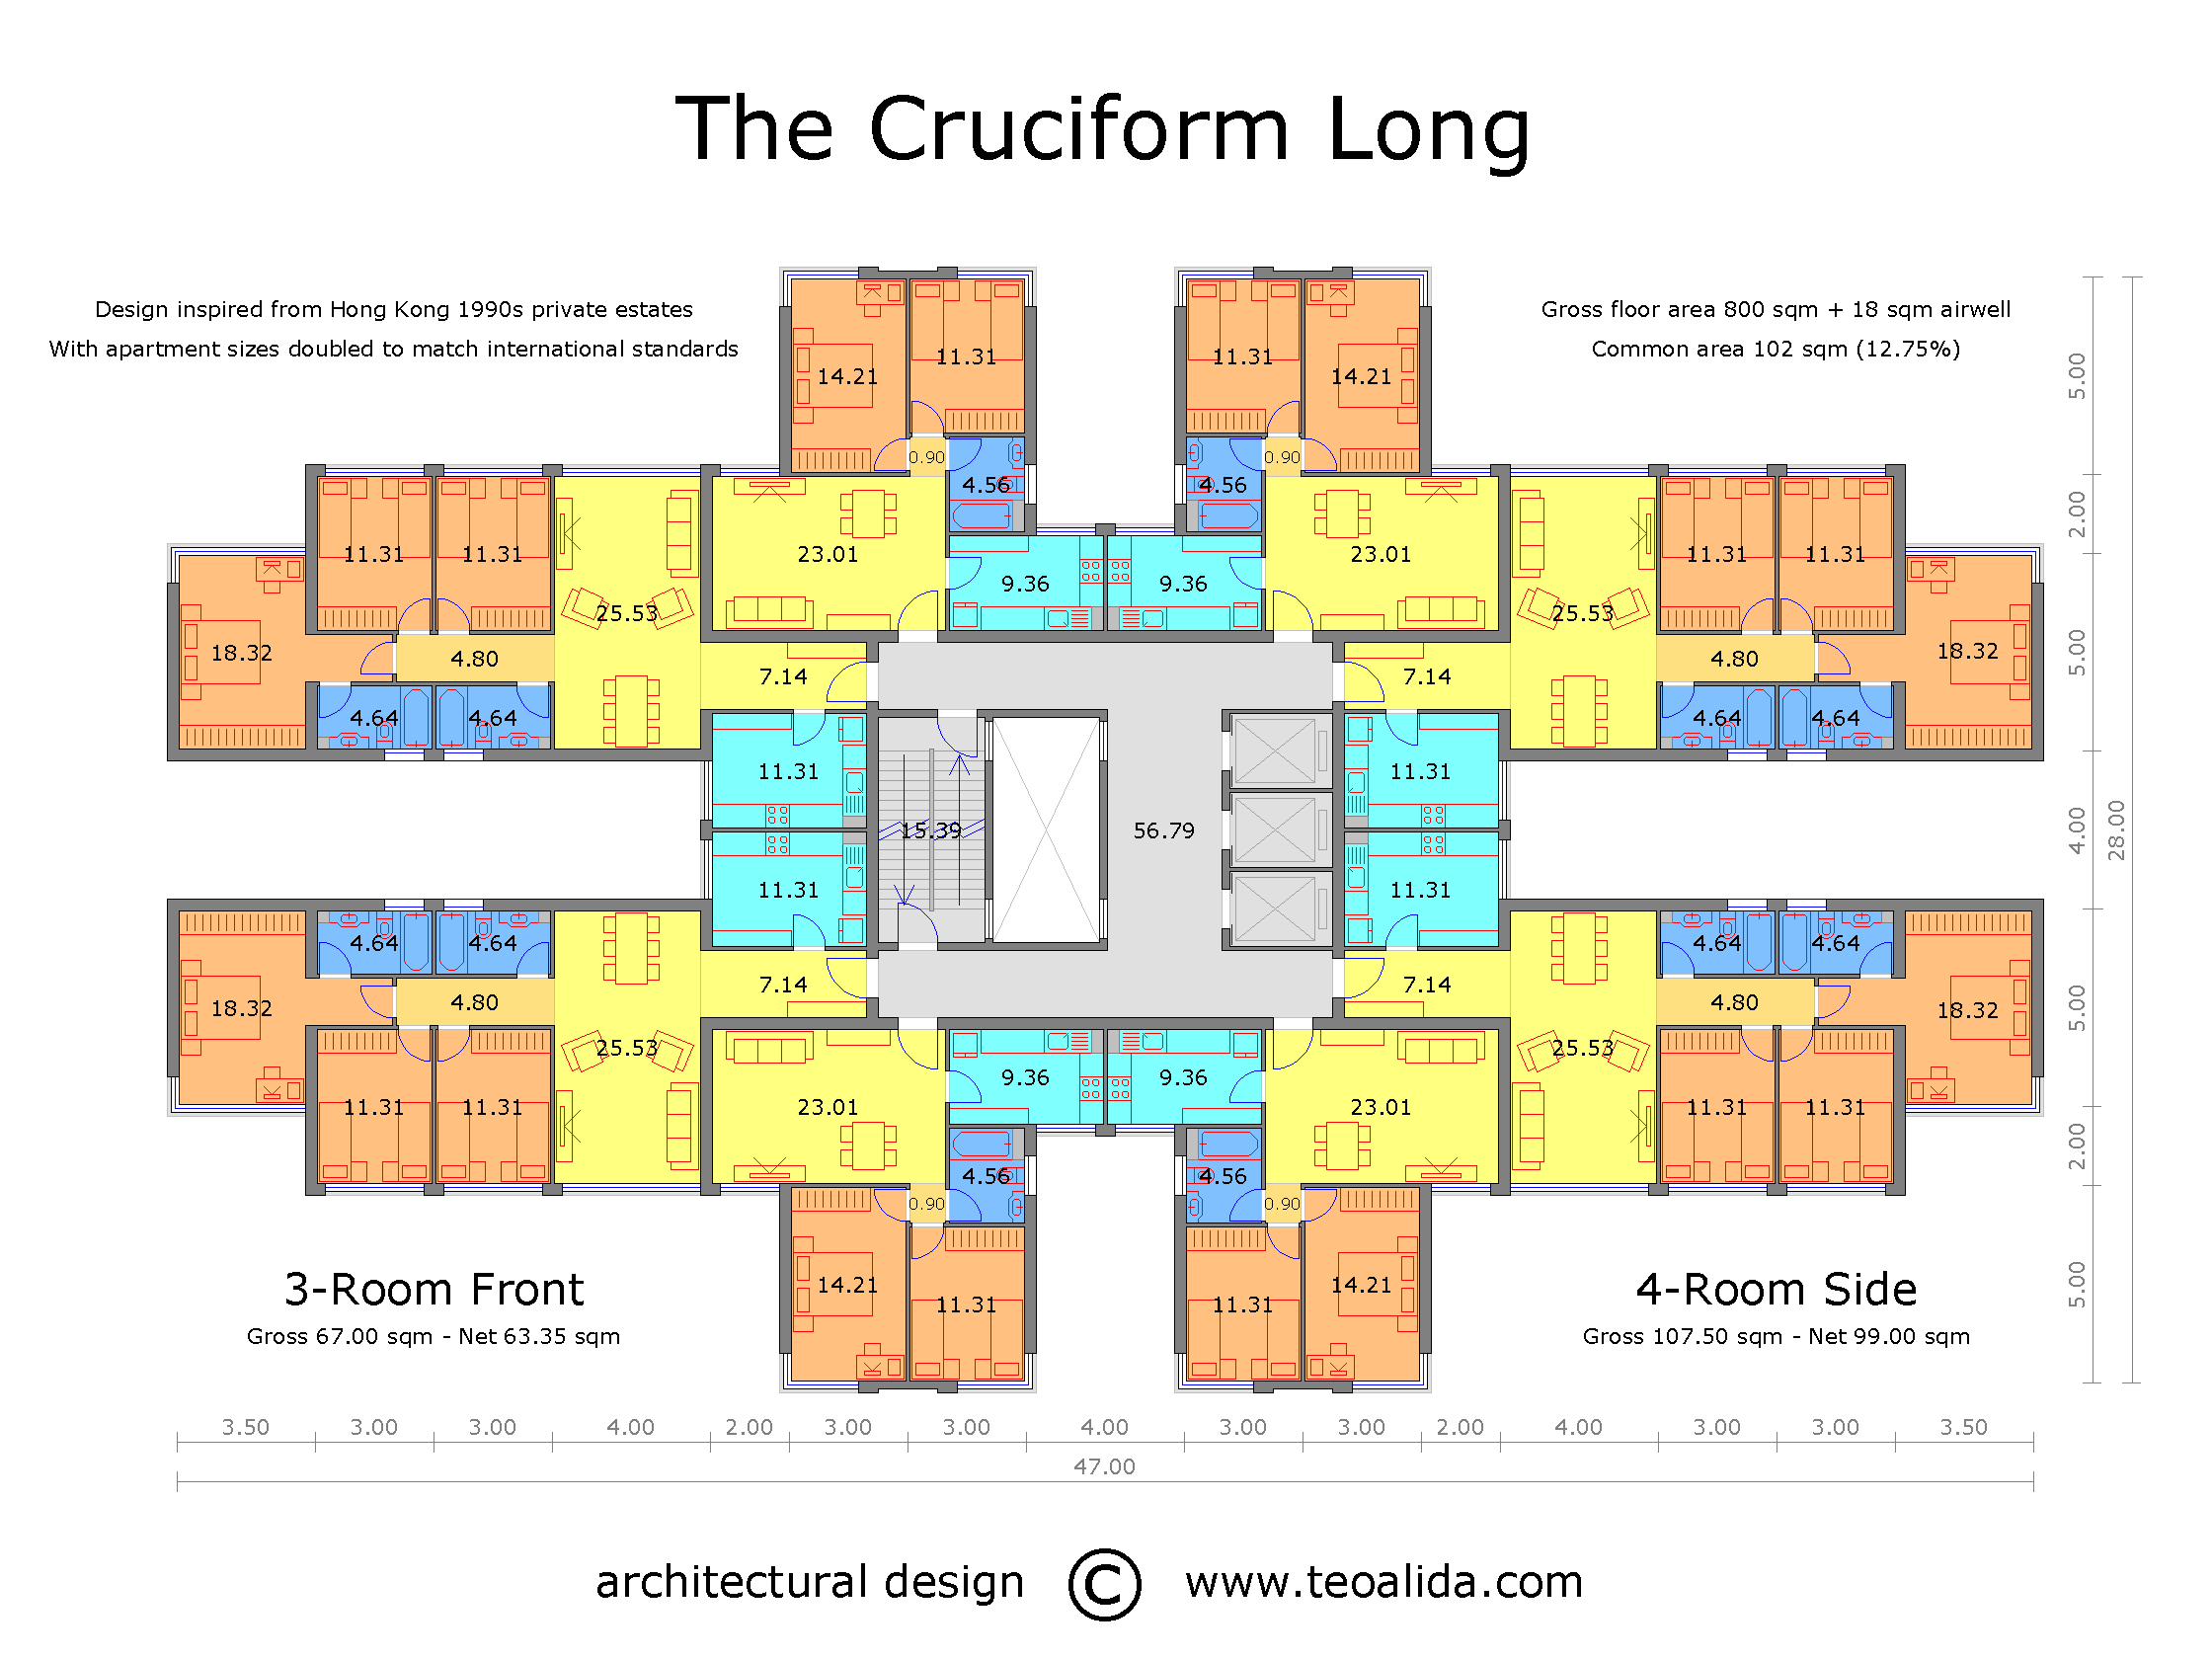 The Cruciform floor plan